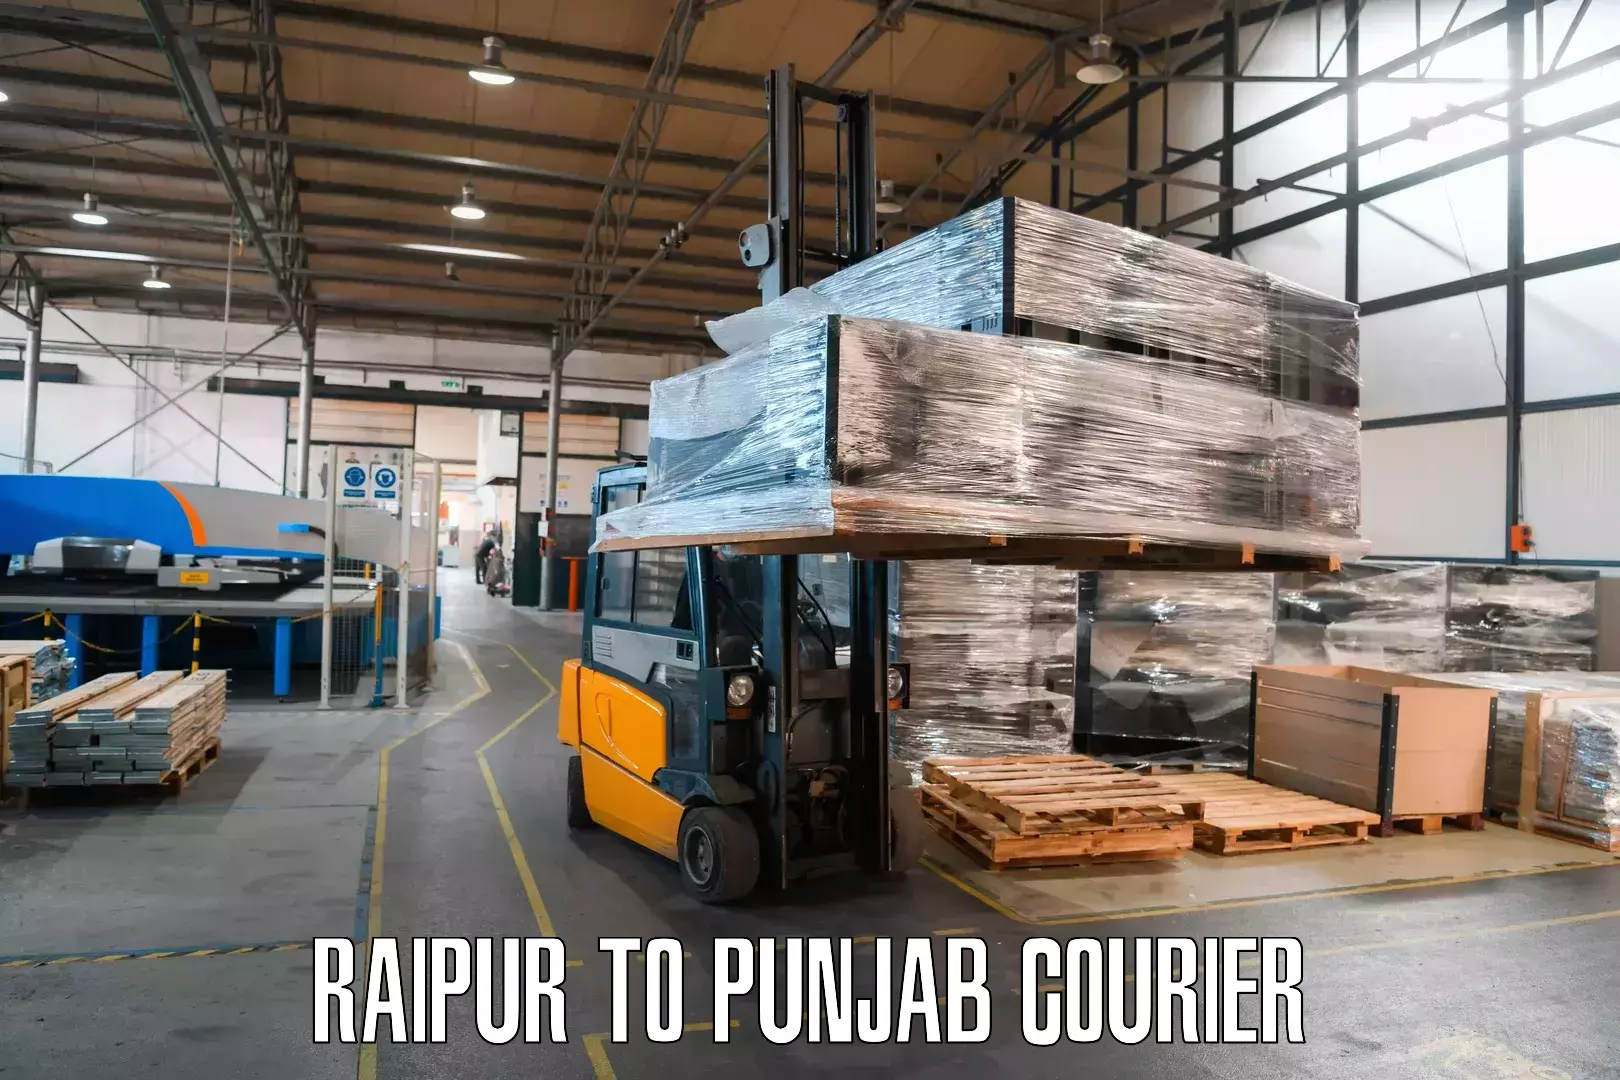 Express postal services Raipur to Punjab